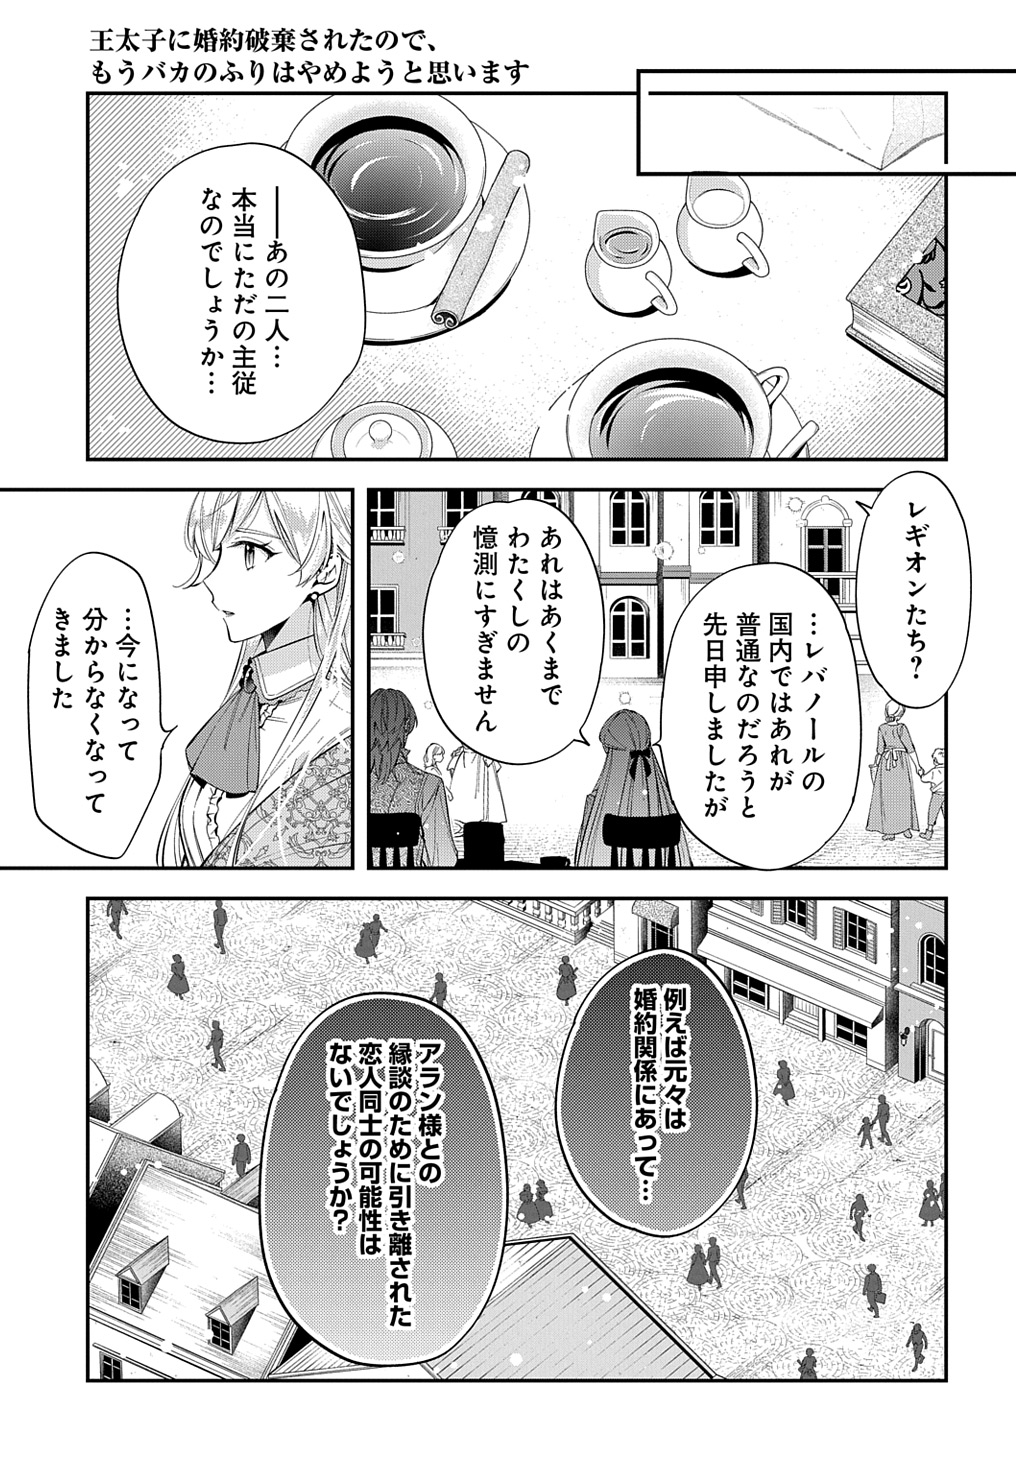 Outaishi ni Konyaku Hakisareta no de, Mou Baka no Furi wa Yameyou to Omoimasu - Chapter 24 - Page 21